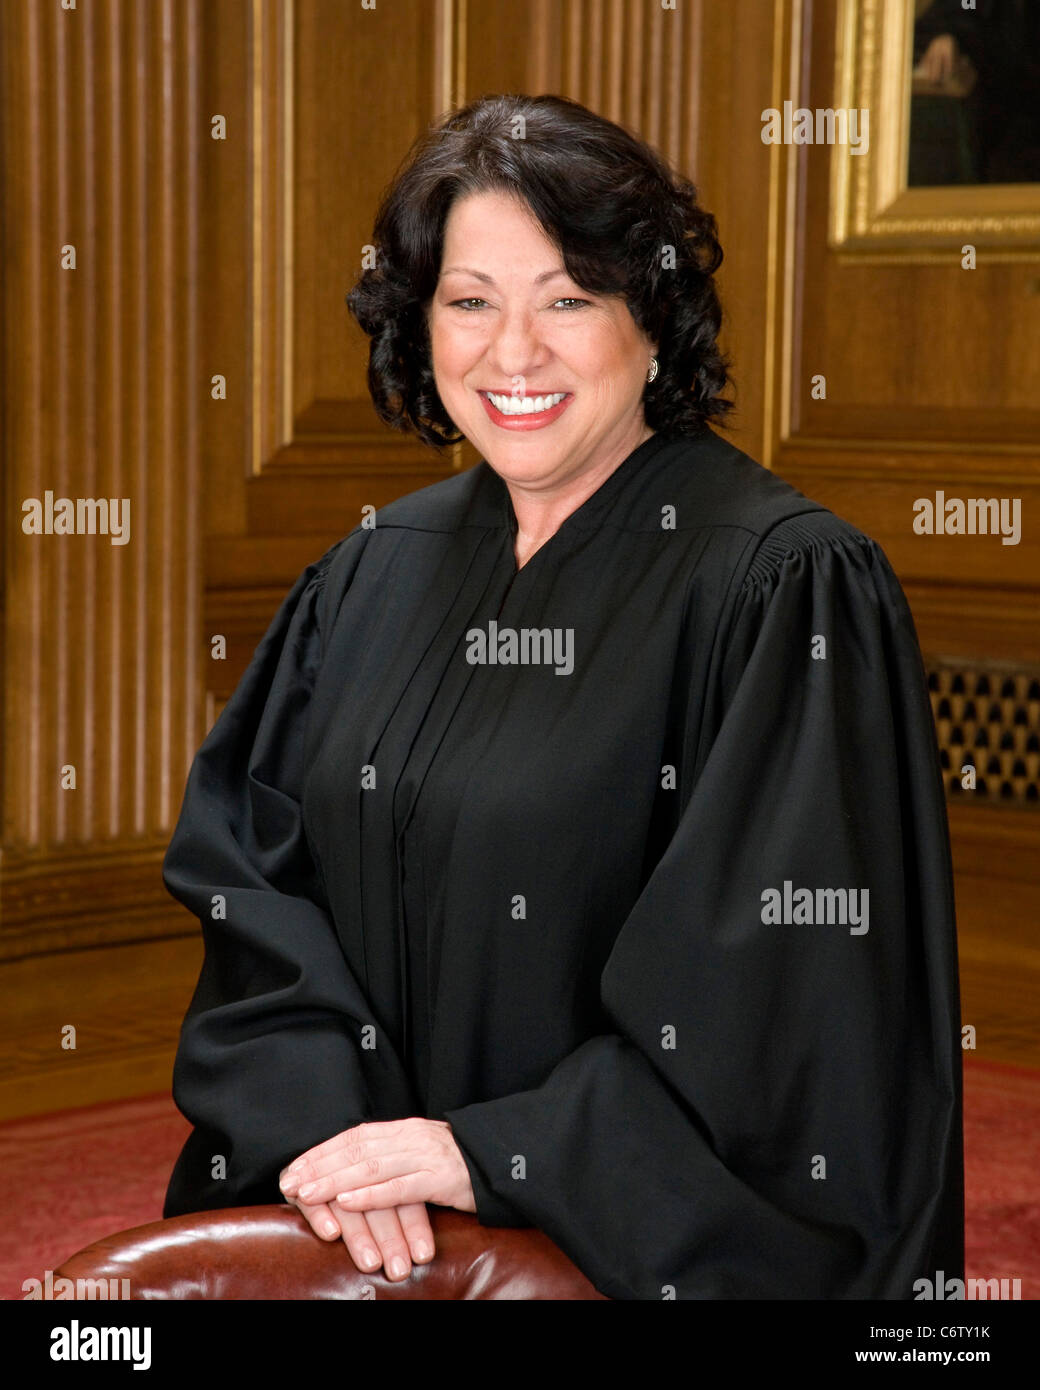 Ritratto ufficiale degli Stati Uniti la Corte Suprema di Giustizia Sonia Maria Sotomayor Foto Stock